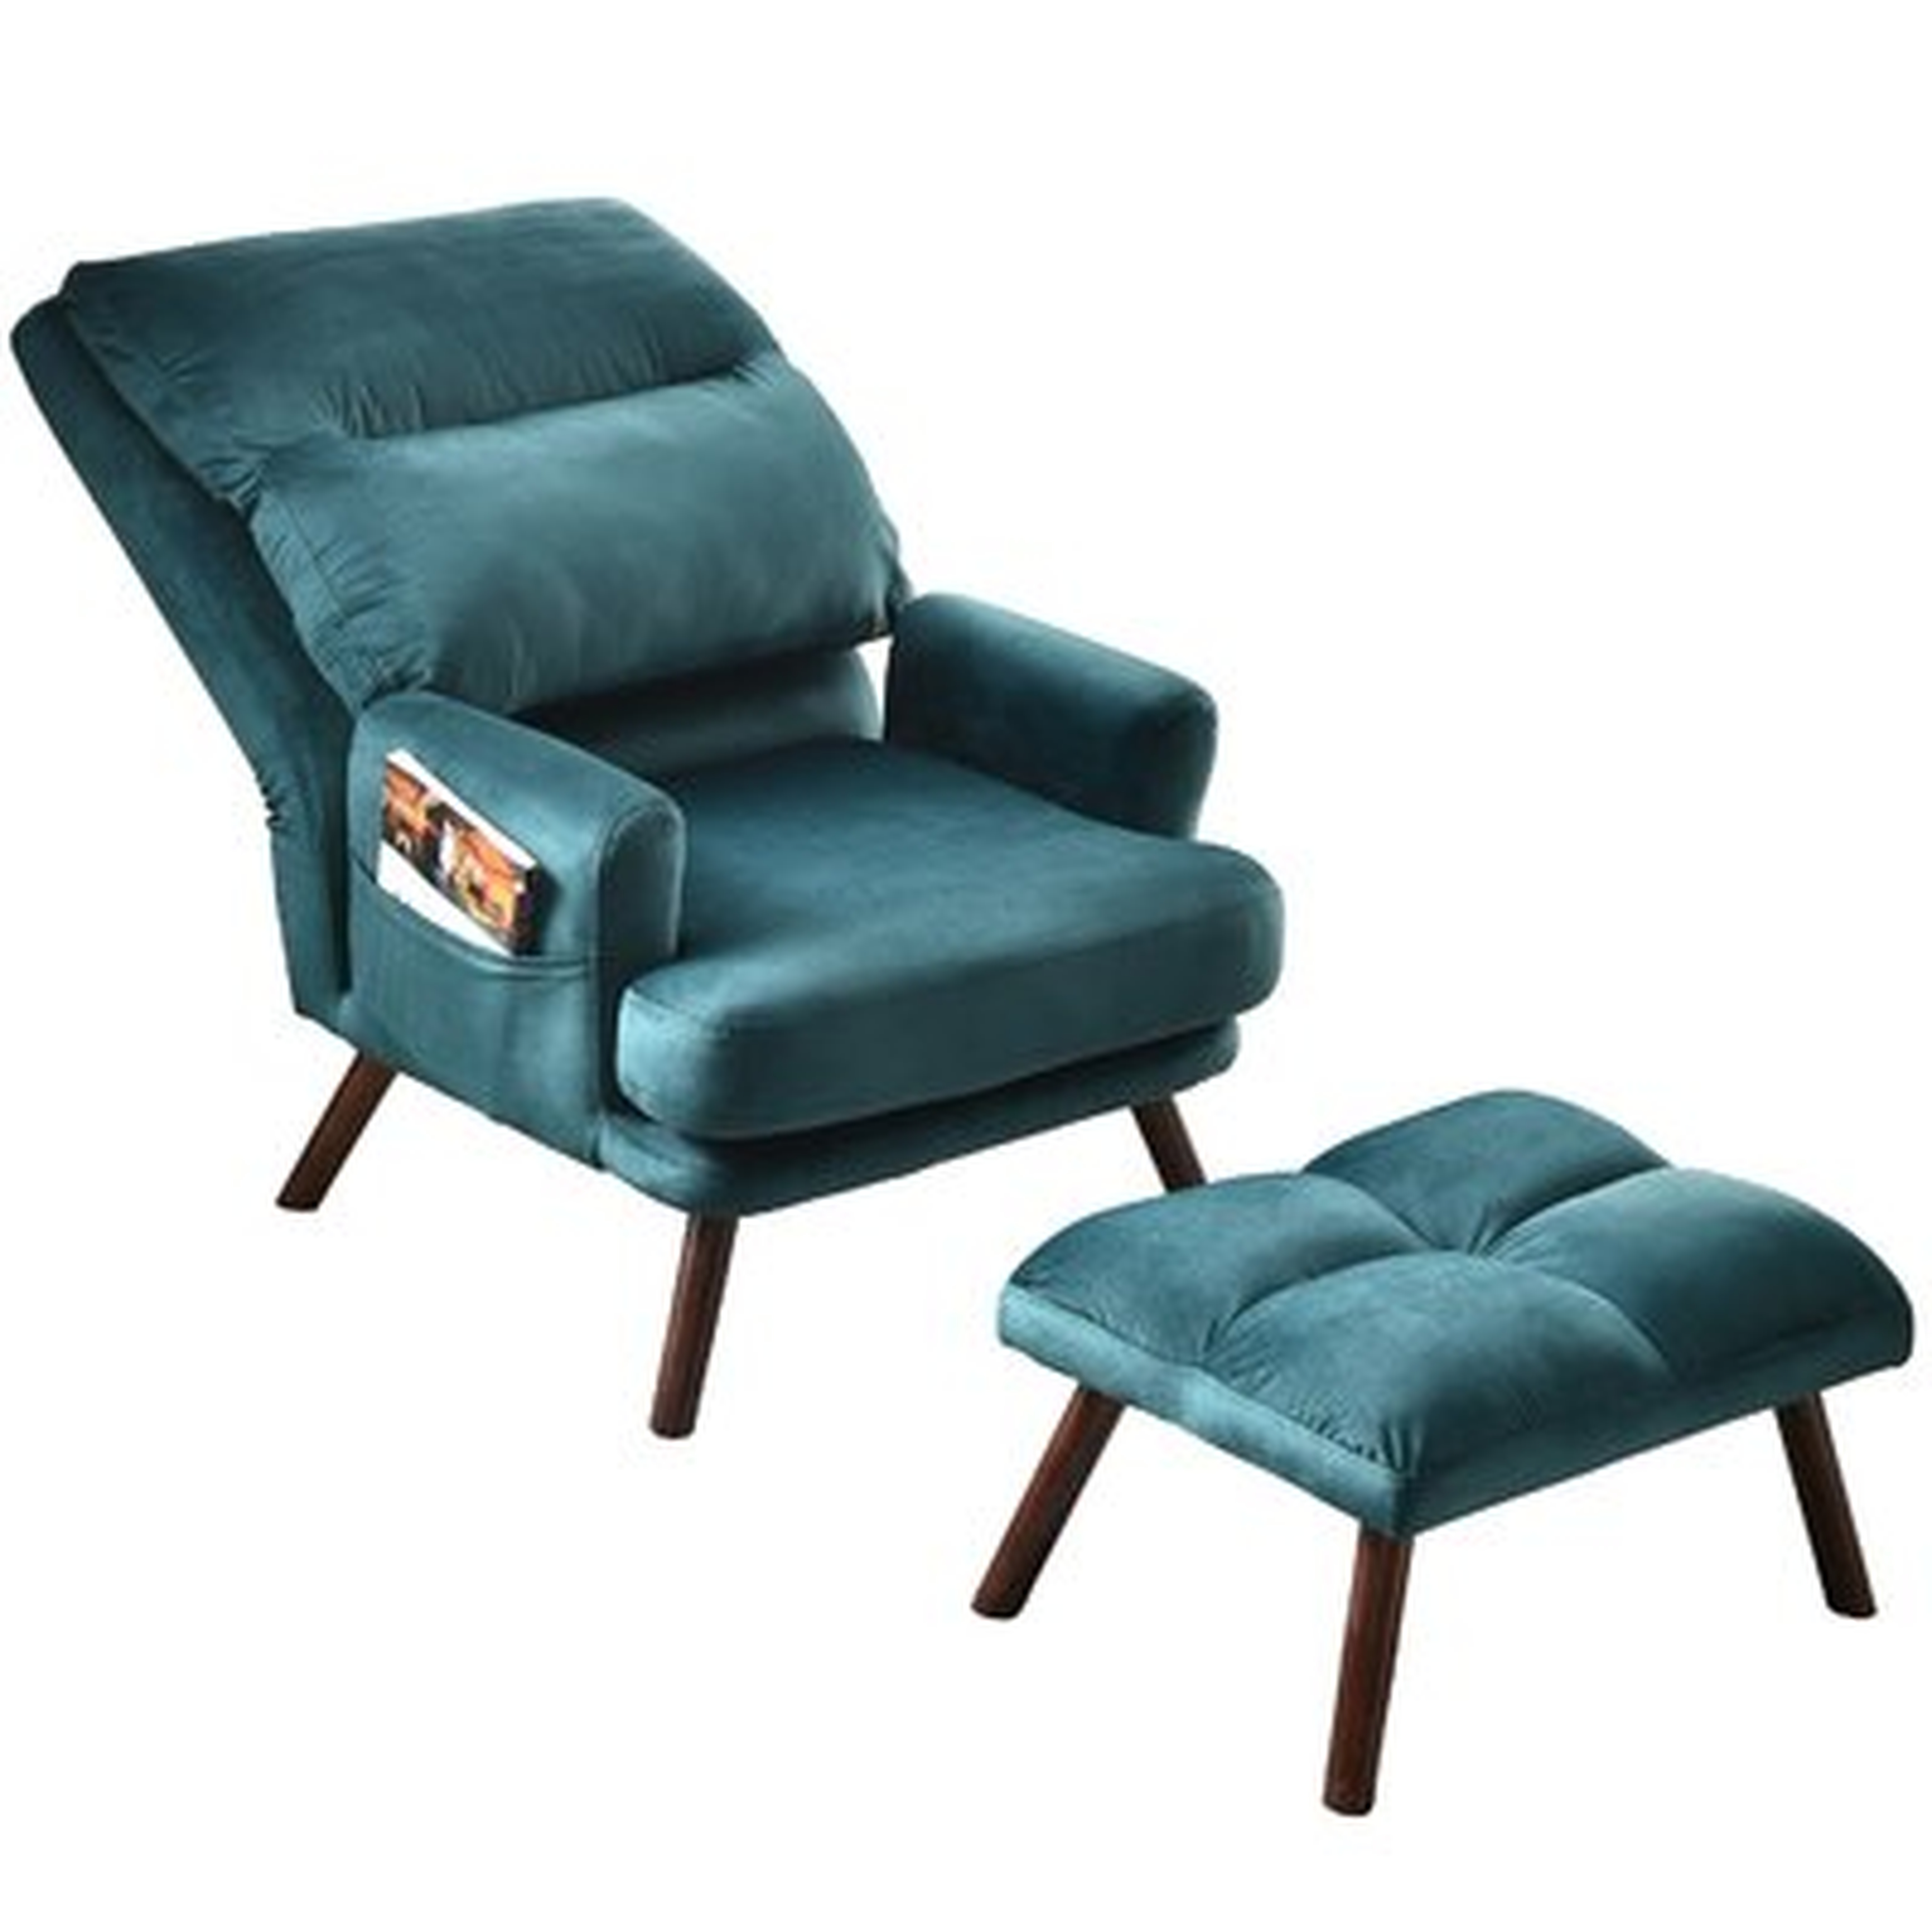 Everalda Lounge Chair and Ottoman - Wayfair